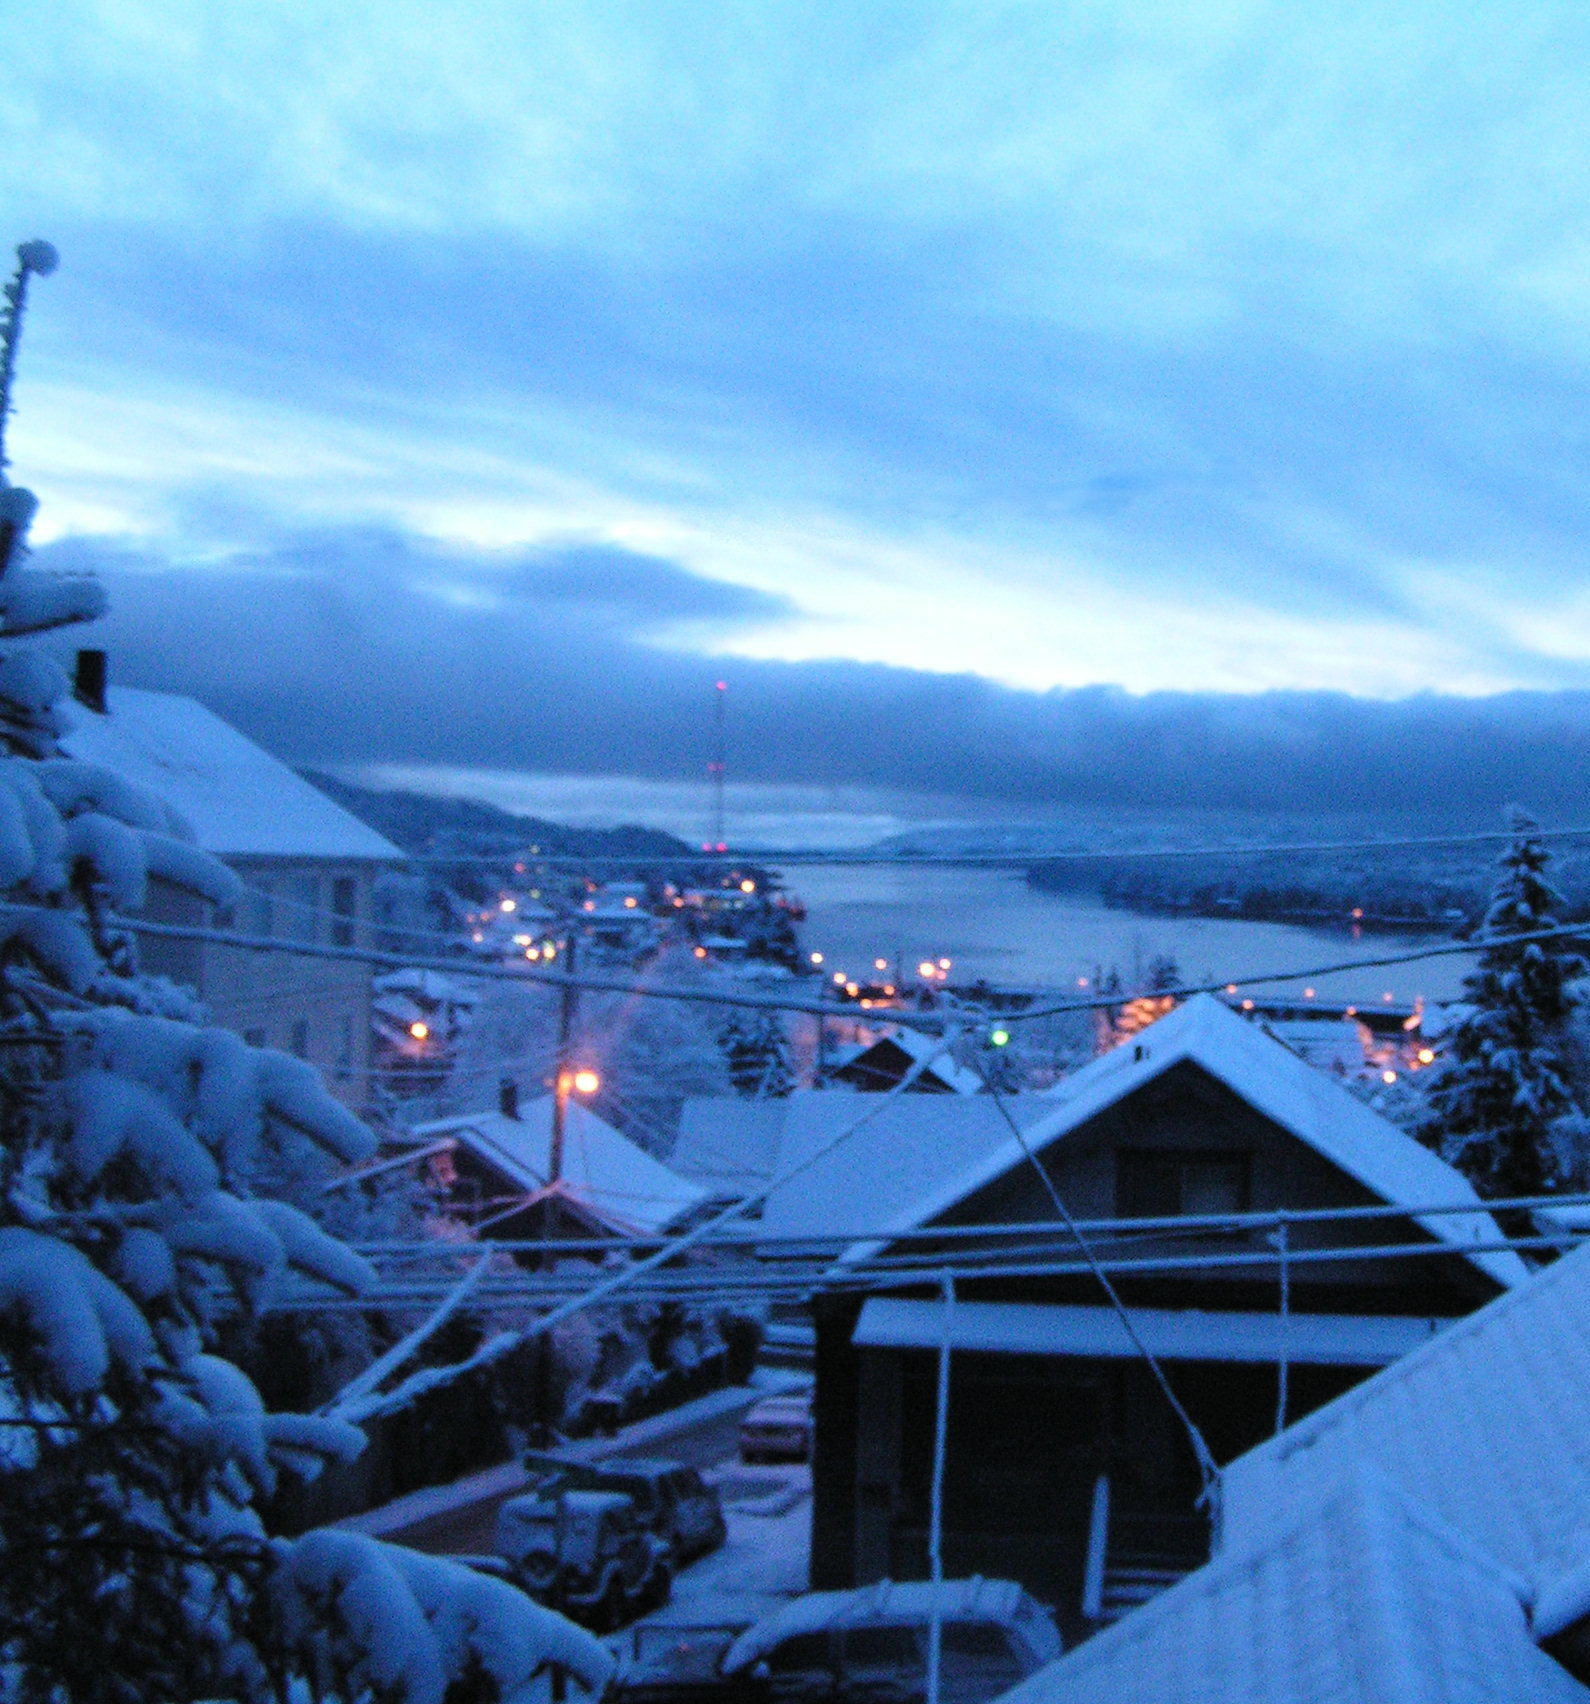  A snowy morning in Ketchikan, Alaska.  